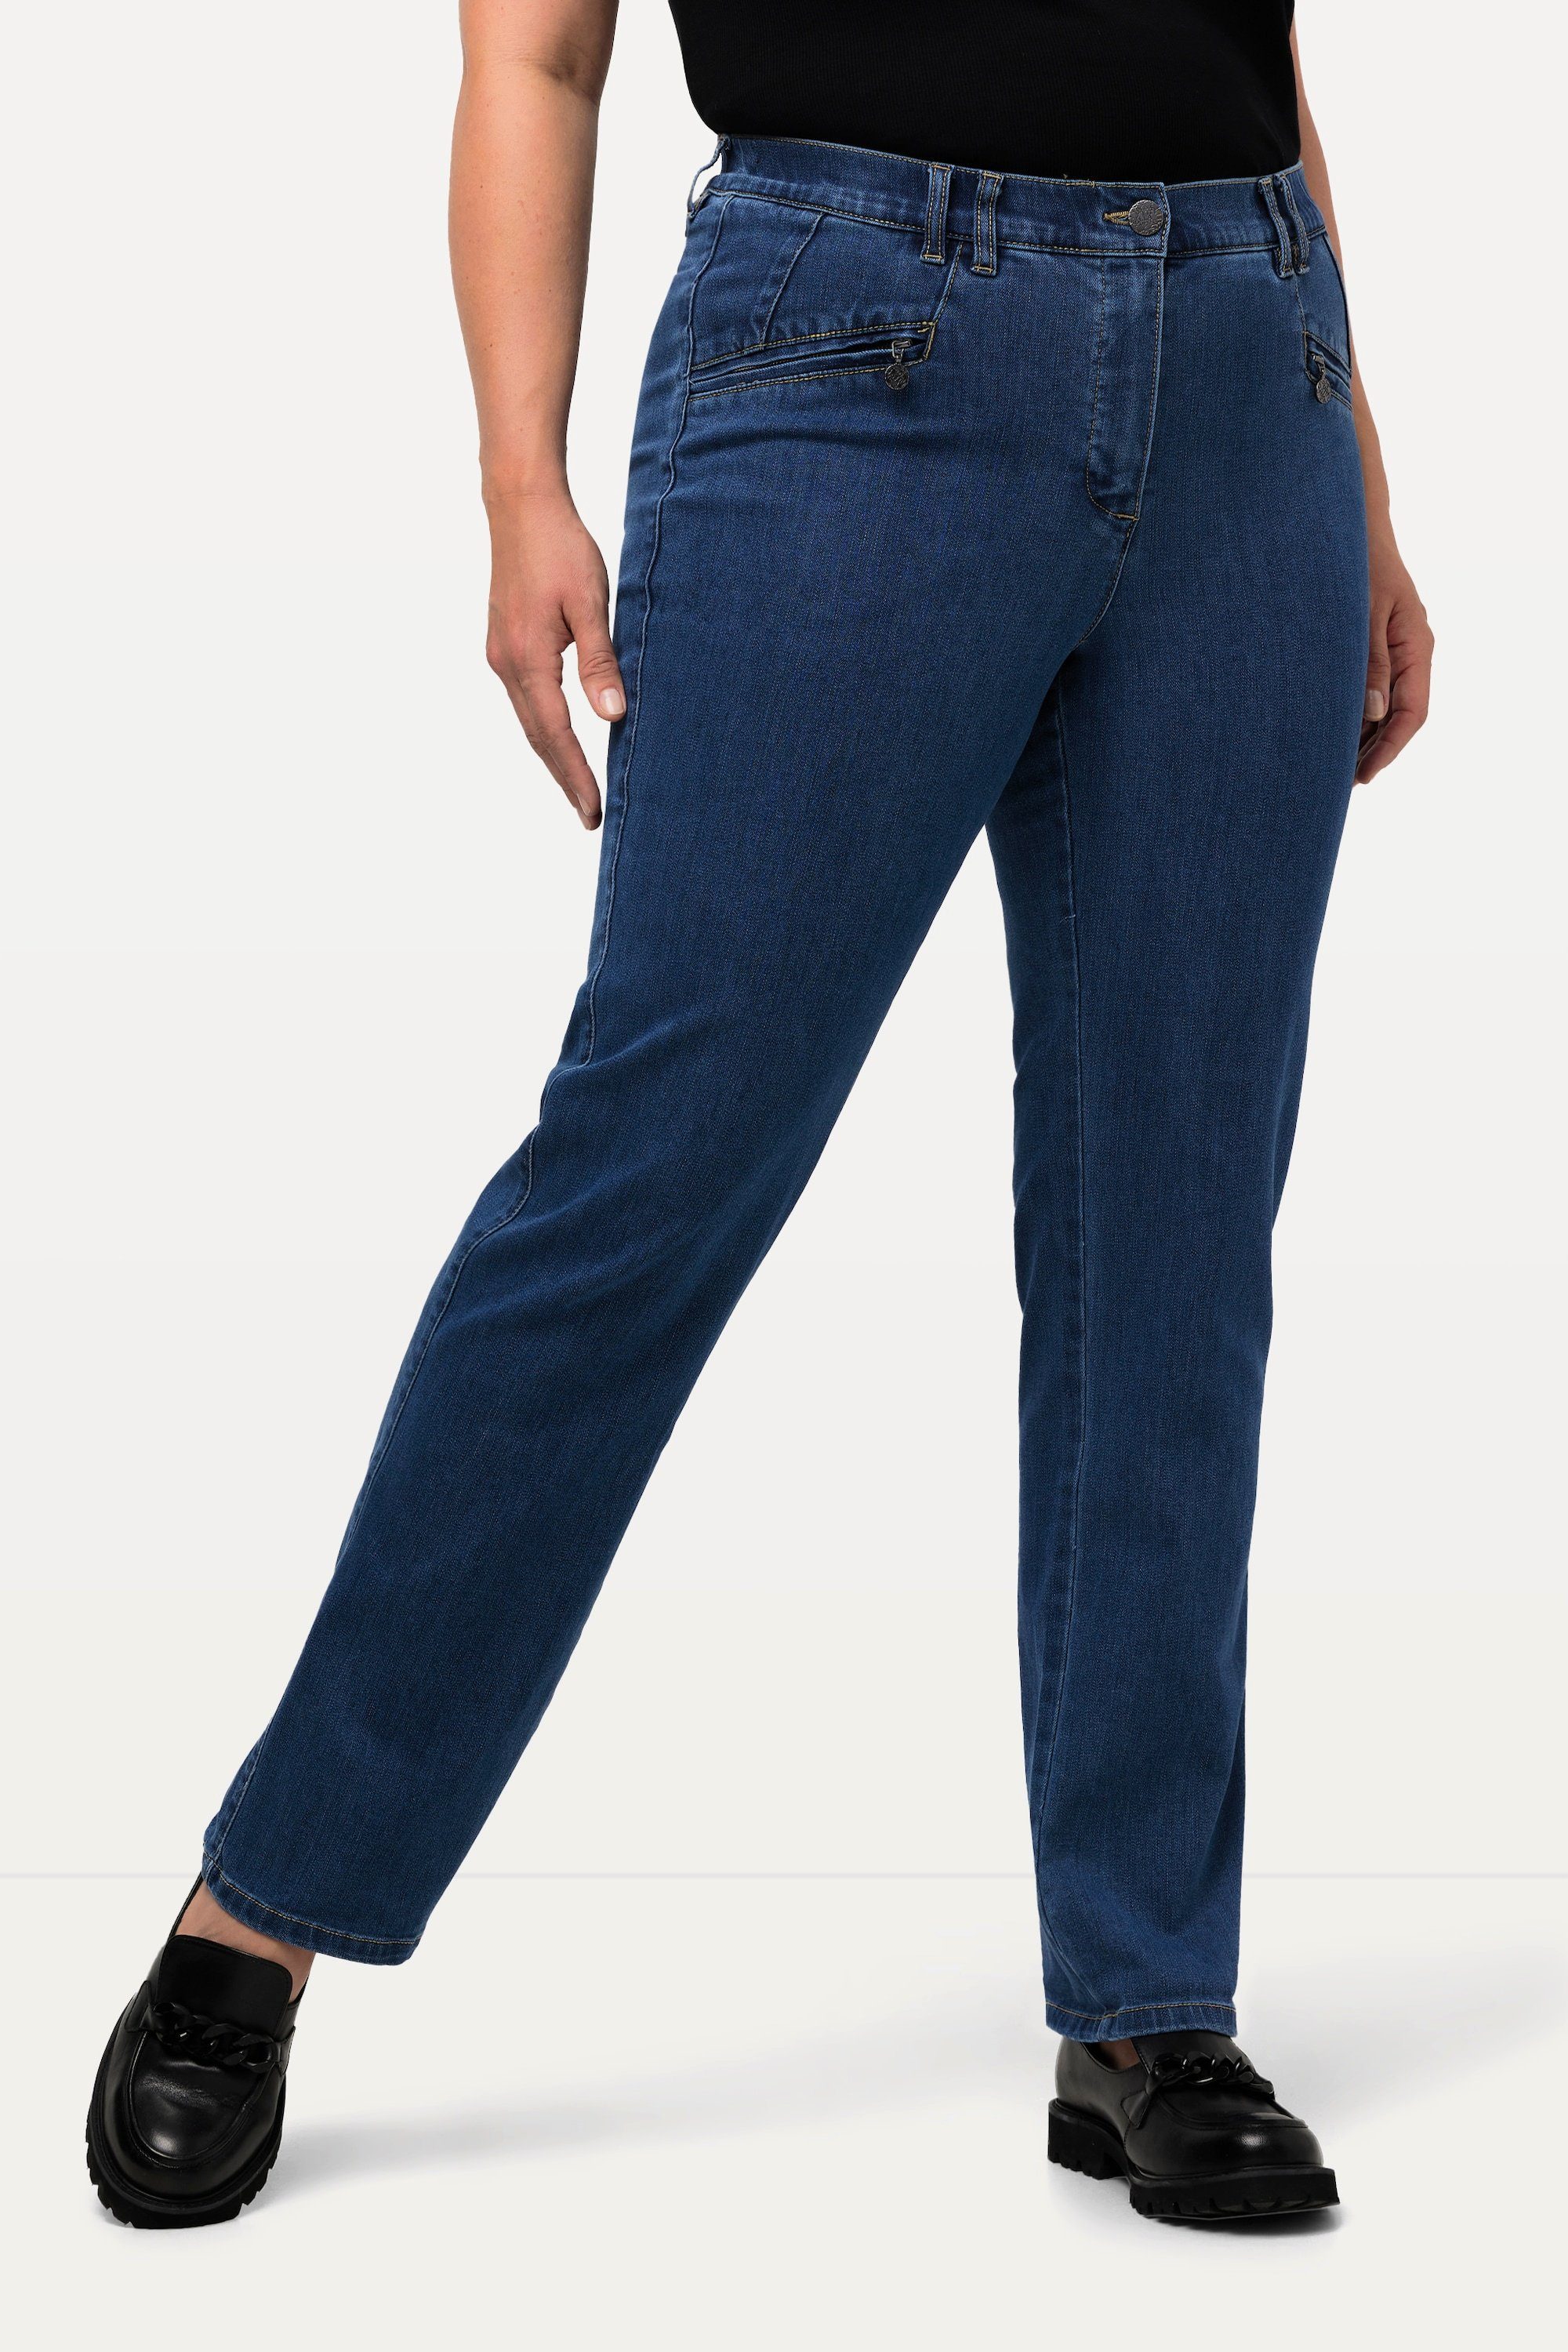 denim blue Popken konisches Jeans Mony Ulla Regular-fit-Jeans Reißverschlusstaschen Bein